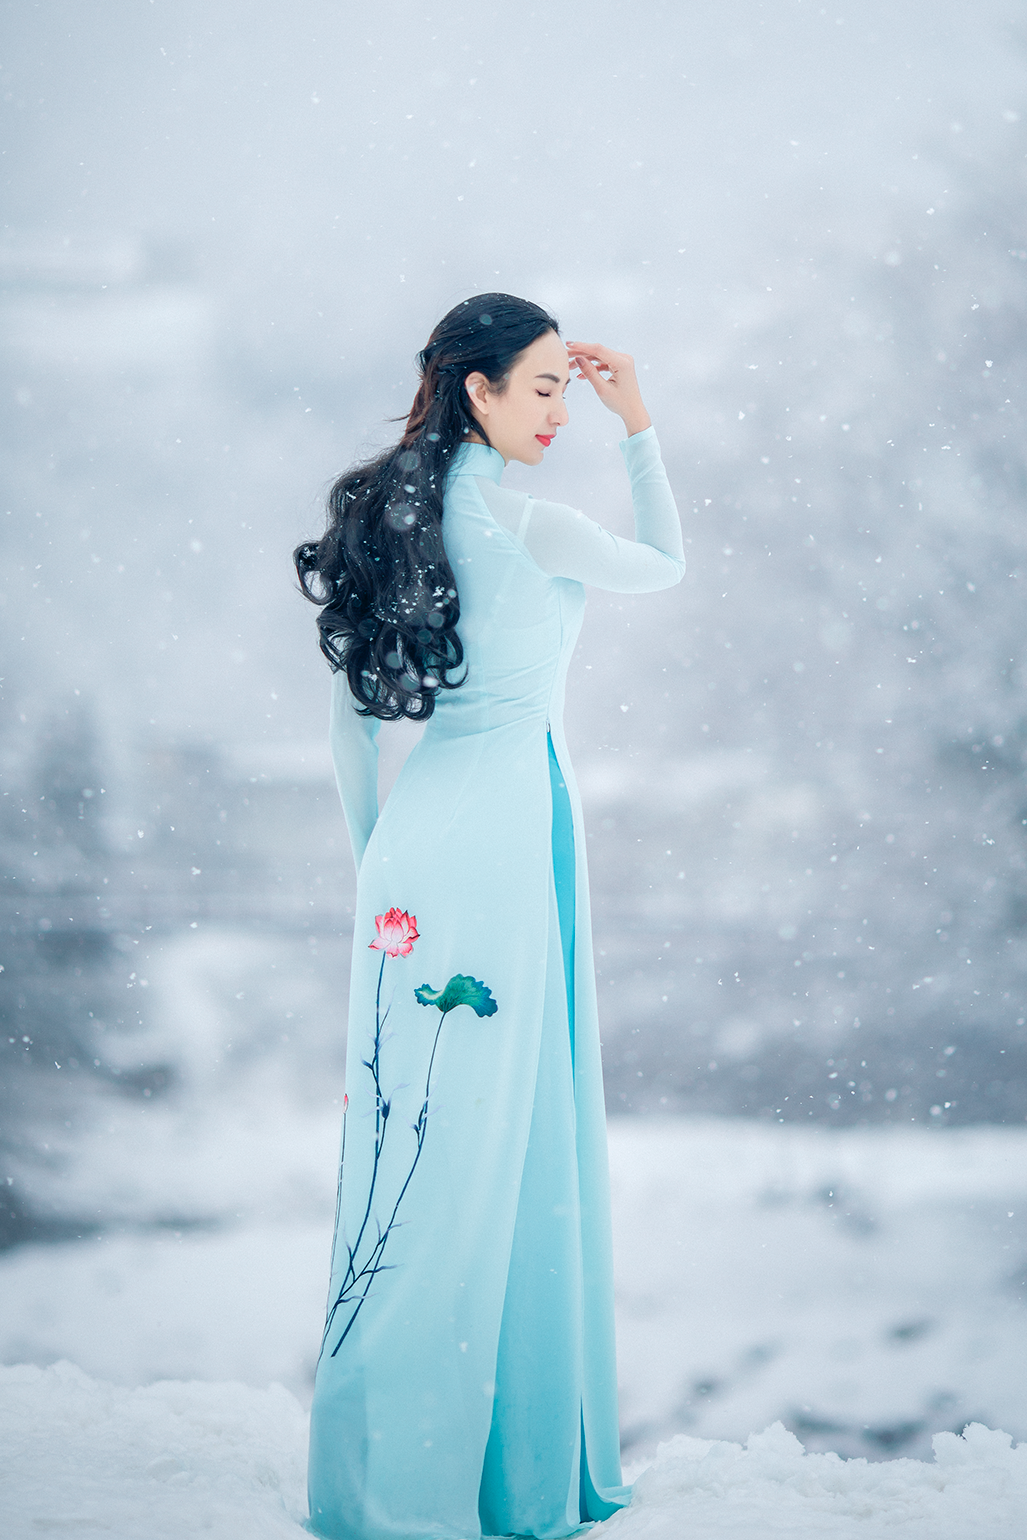 Hoa hậu Du lịch Việt Nam 2008 Phan Thị Ngọc Diễm chụp ảnh với áo dài truyền thống giữa trời tuyết trắng xóa ở Nhật Bản